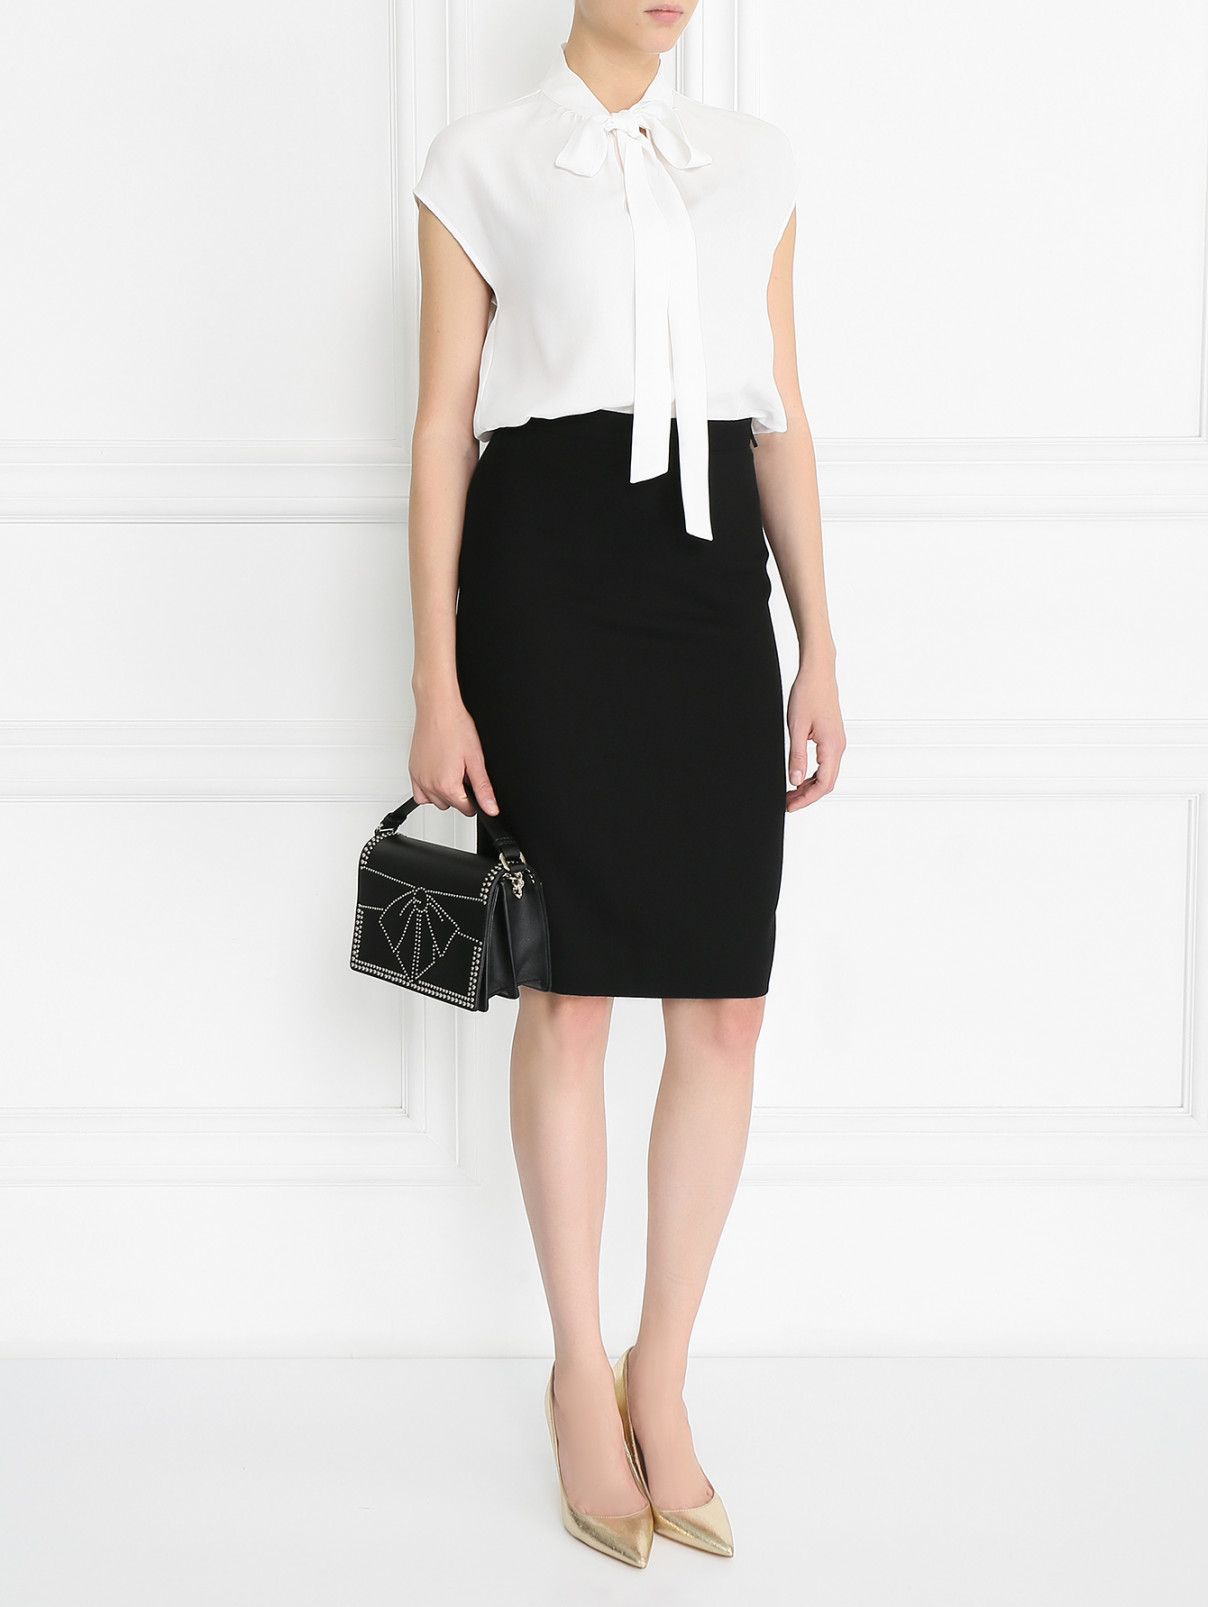 Блуза из вискозы и шелка Moschino Boutique  –  Модель Общий вид  – Цвет:  Белый